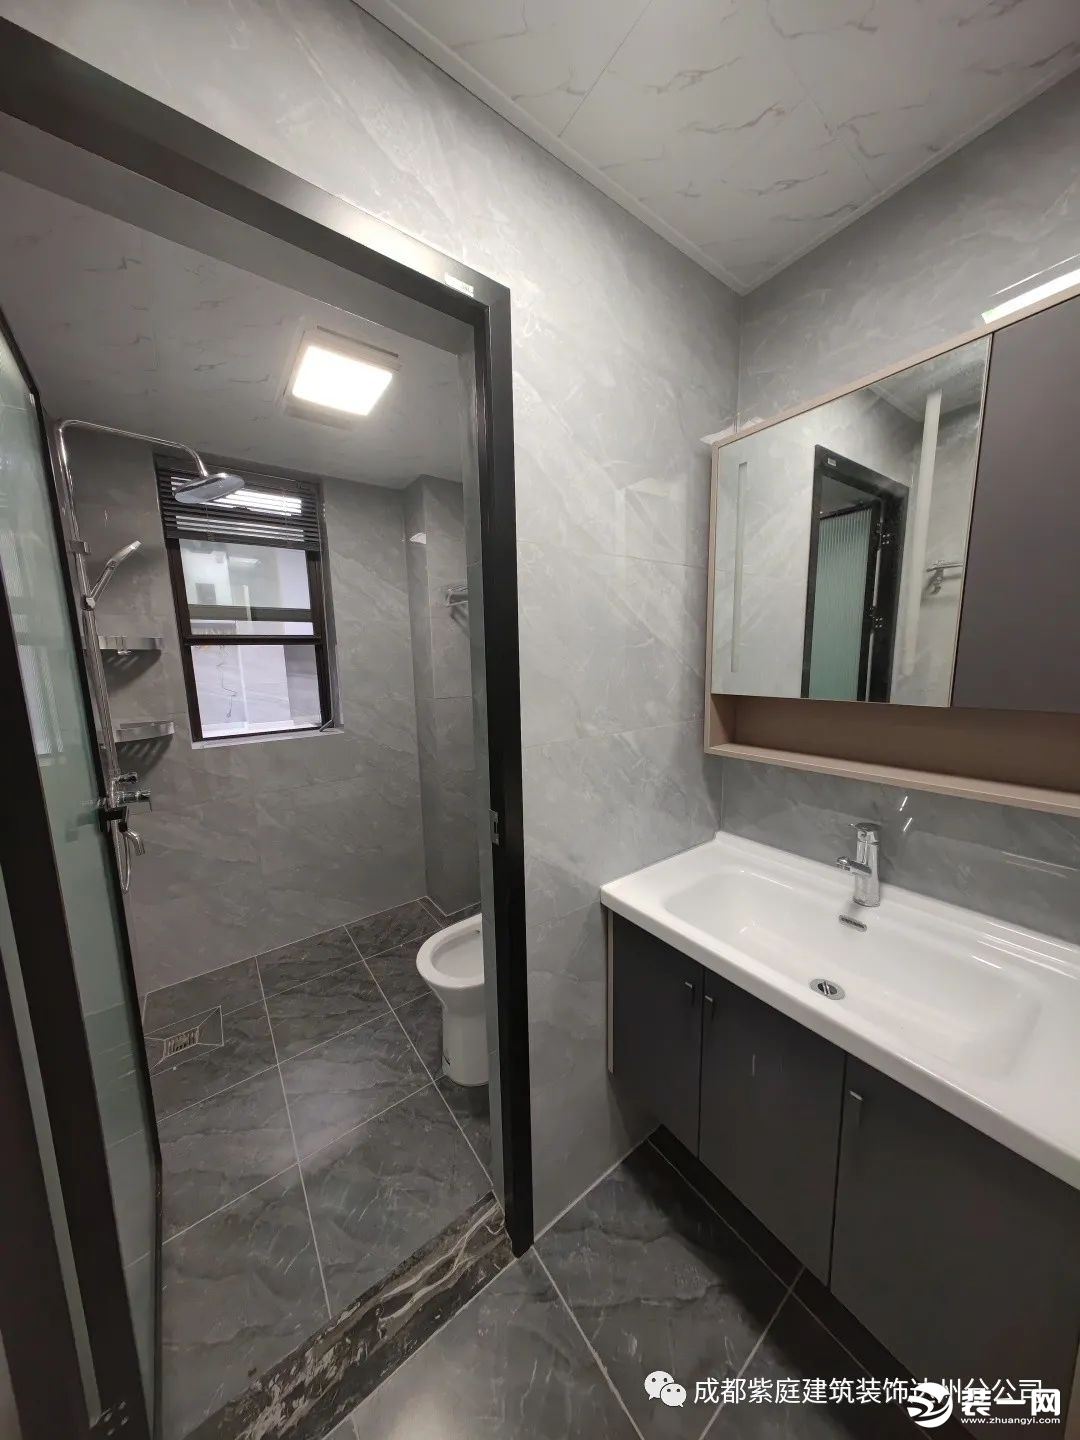 卫生间，采用干湿分离的设计，又用不同色系的灰色让空间极具简约美感，显得干净清爽。